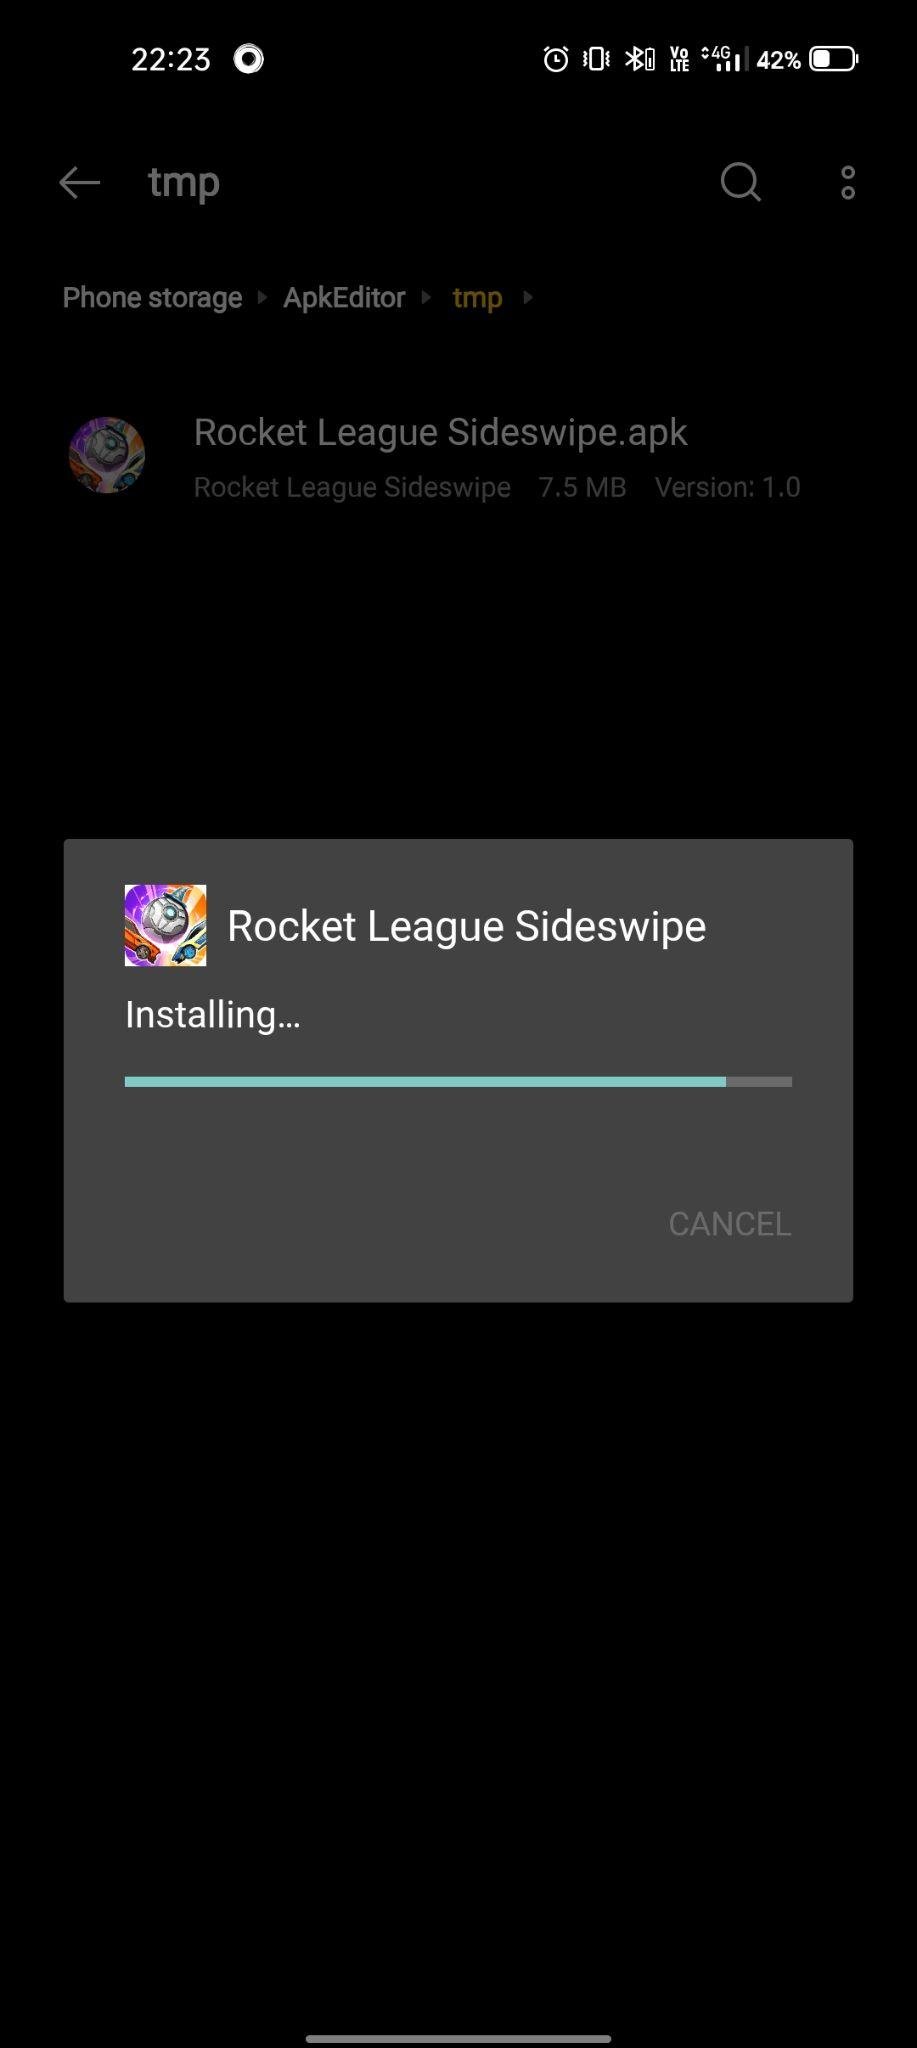 Rocket League Sideswipe apk installing